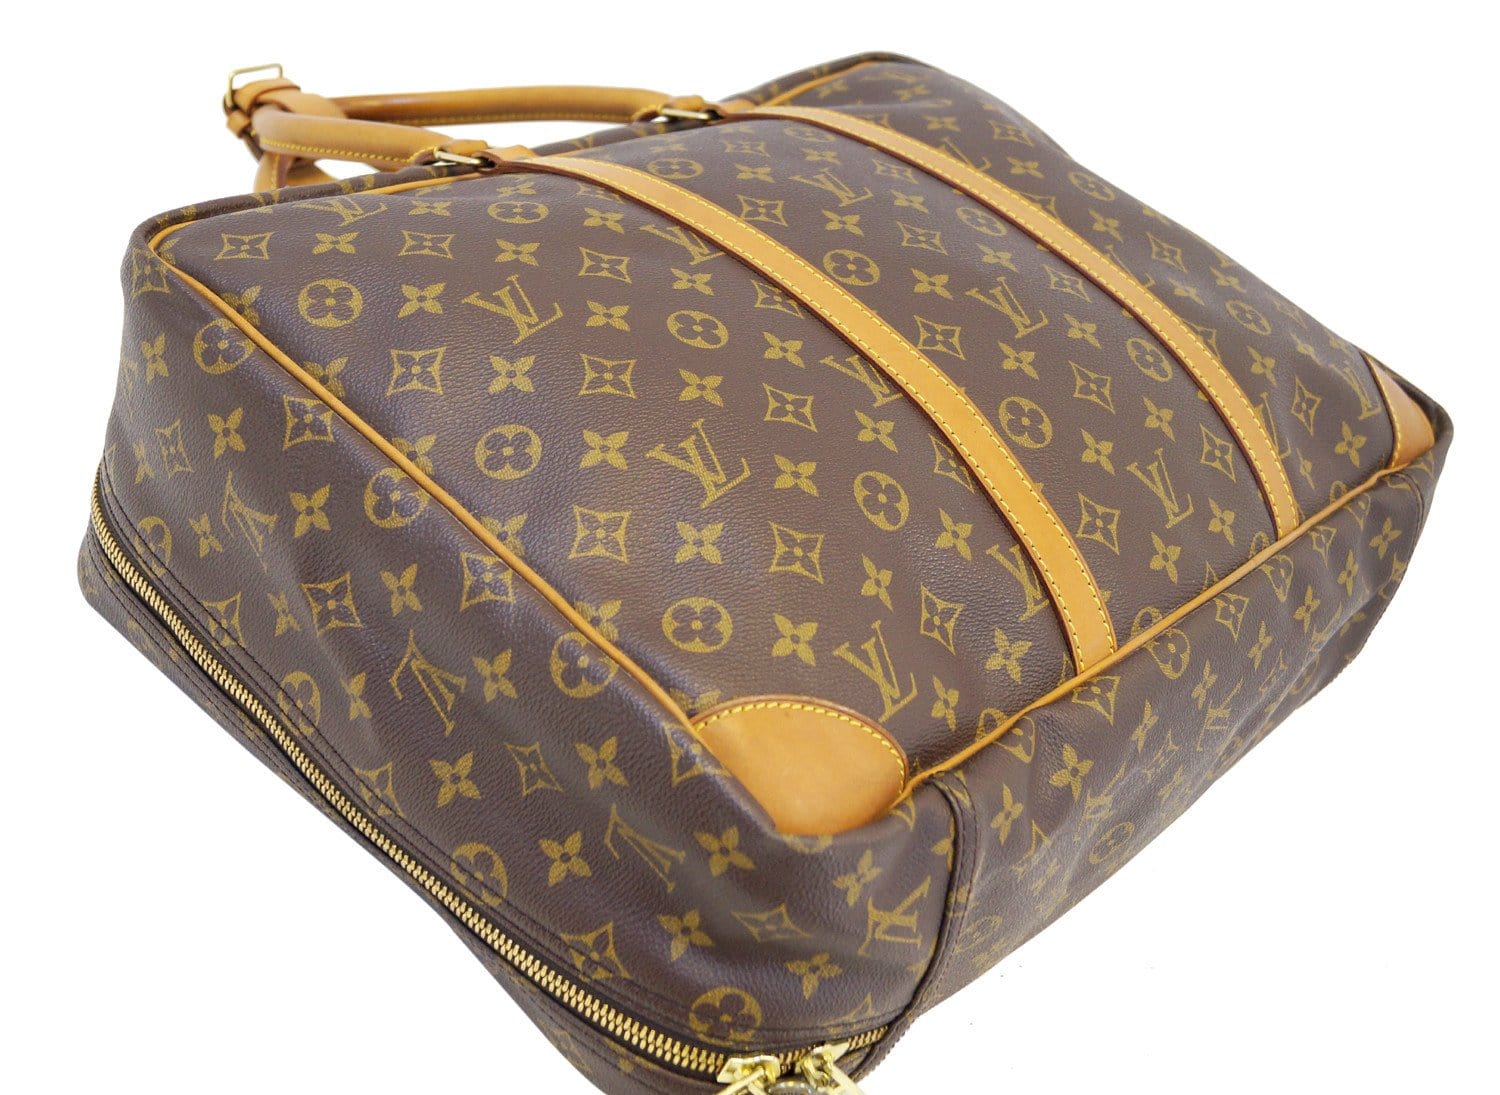 Louis Vuitton - Sirius 45 - Travel bag - Catawiki